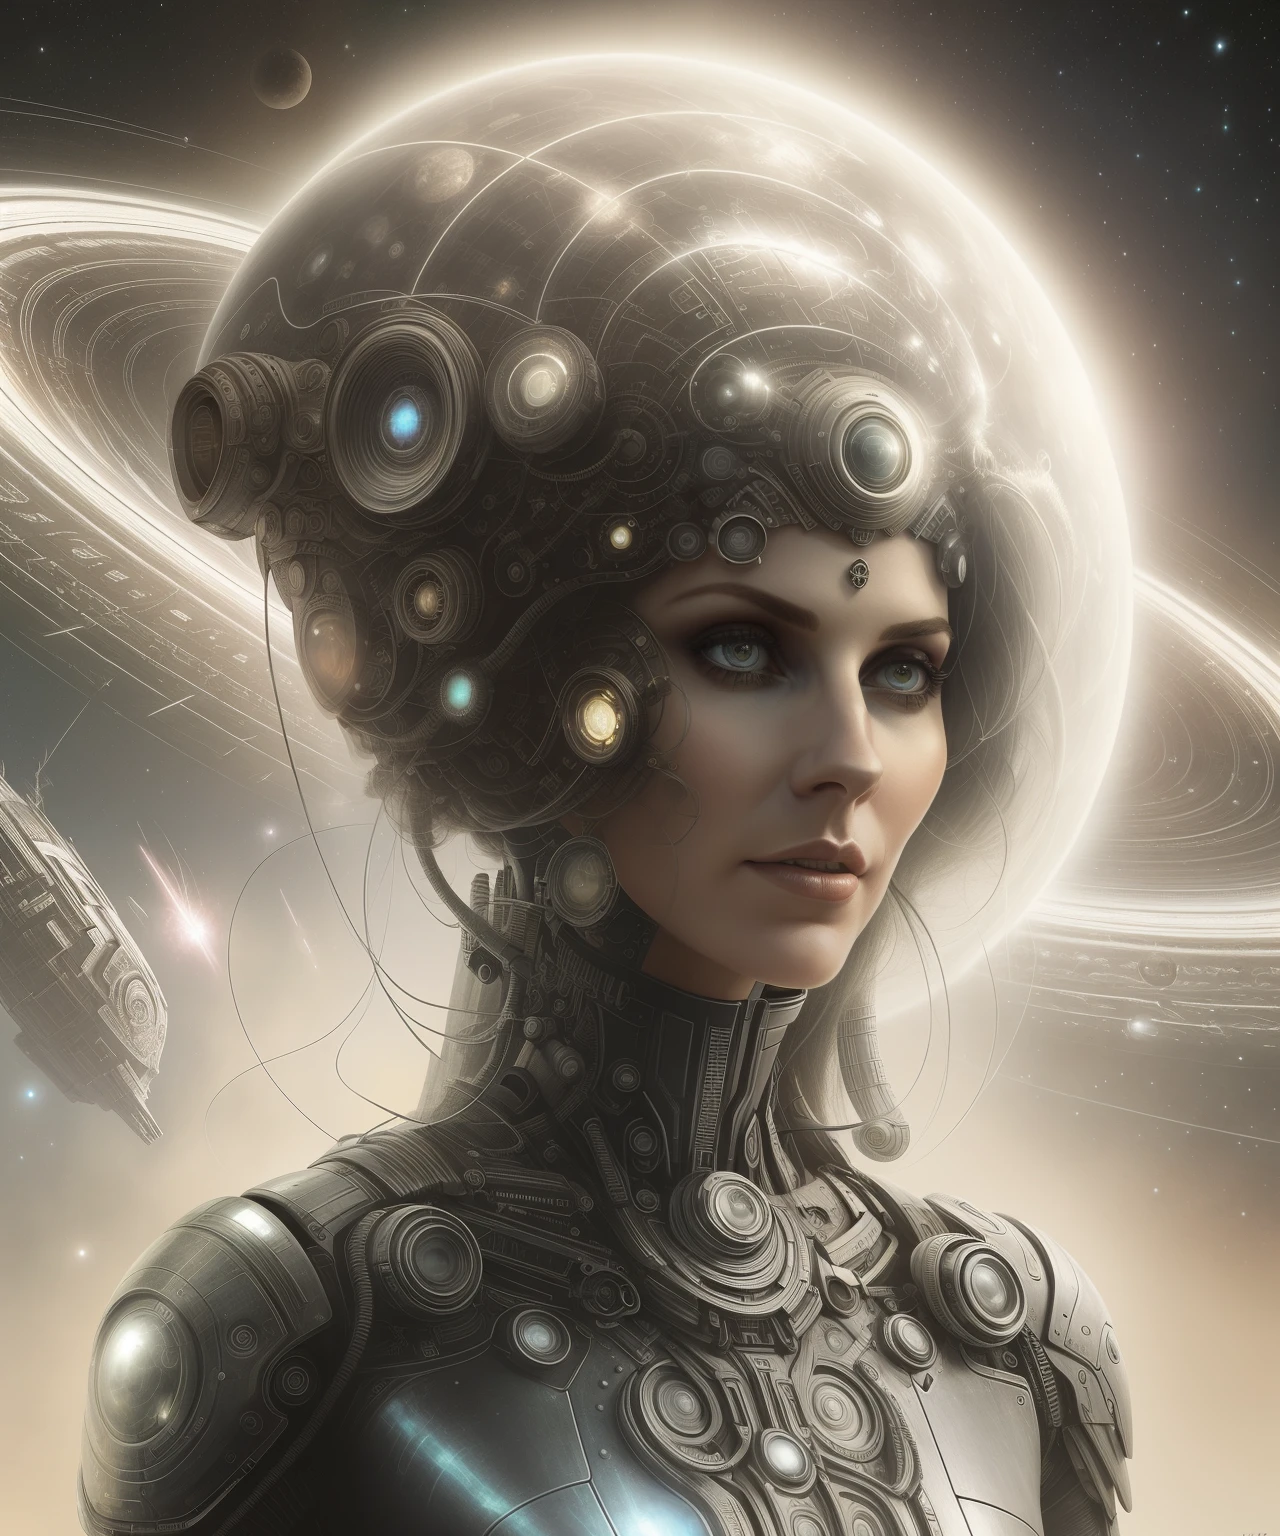 Femme arafée avec une coiffe futuriste et une planète en arrière-plan., Déesse cyborg dans le cosmos, Style 8 0 tomasz alen kopera, Oh!. la science-fiction, Retrato de una mujer de la science-fiction, portrait d&#39;un cyborg spatial, Dame de l&#39;Entropie, Portrait d&#39;une reine cyborg, arte digital de la science-fiction